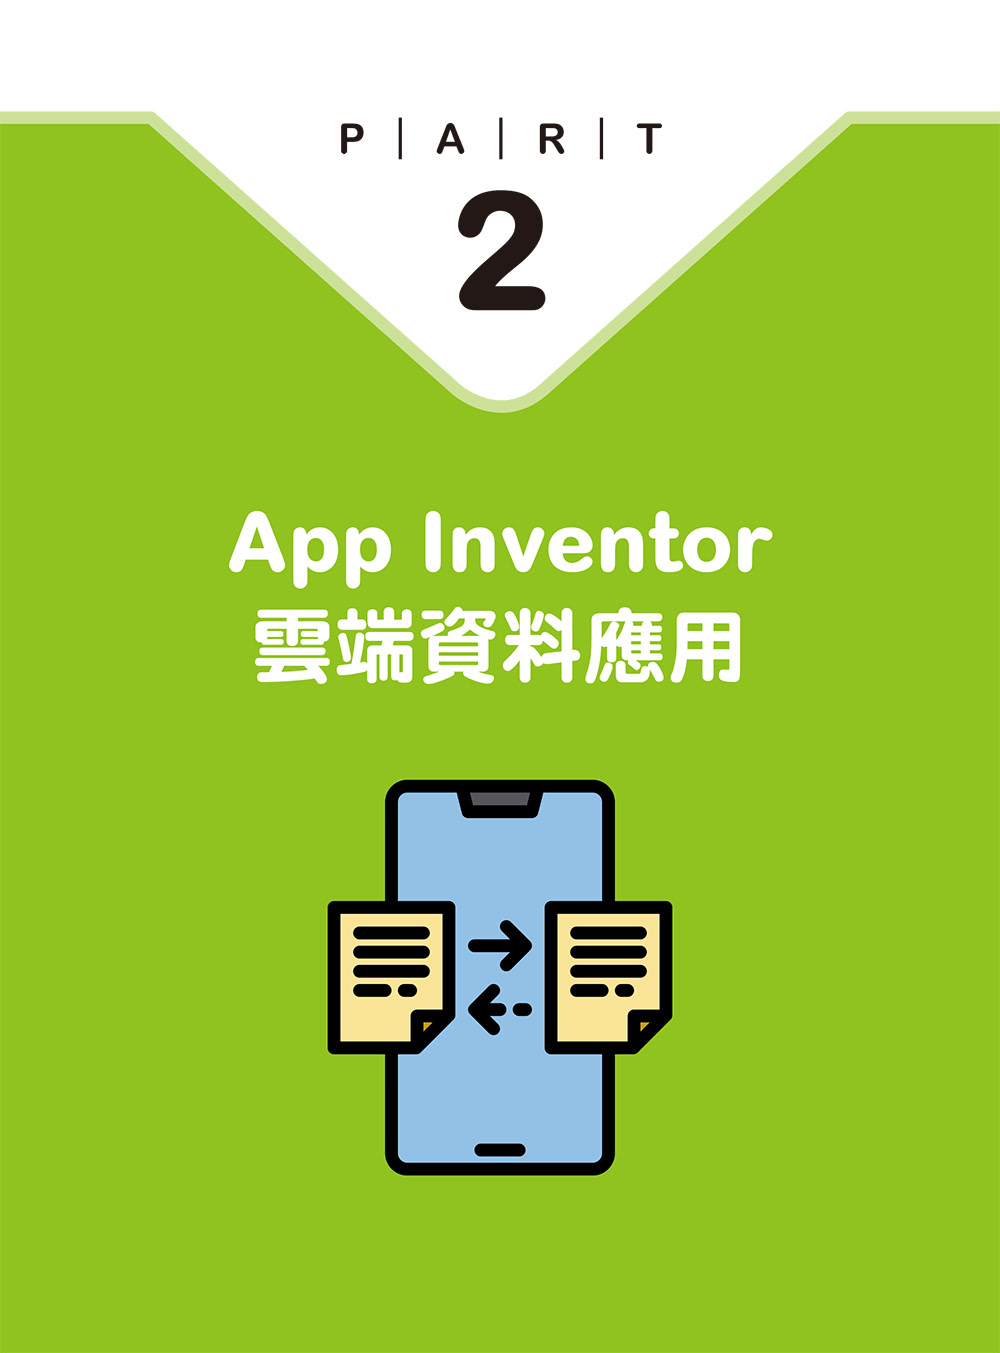 人人都學得會的App Inventor 2初學入門〔附APP專案範例檔〕：自學APP設計一本搞定！